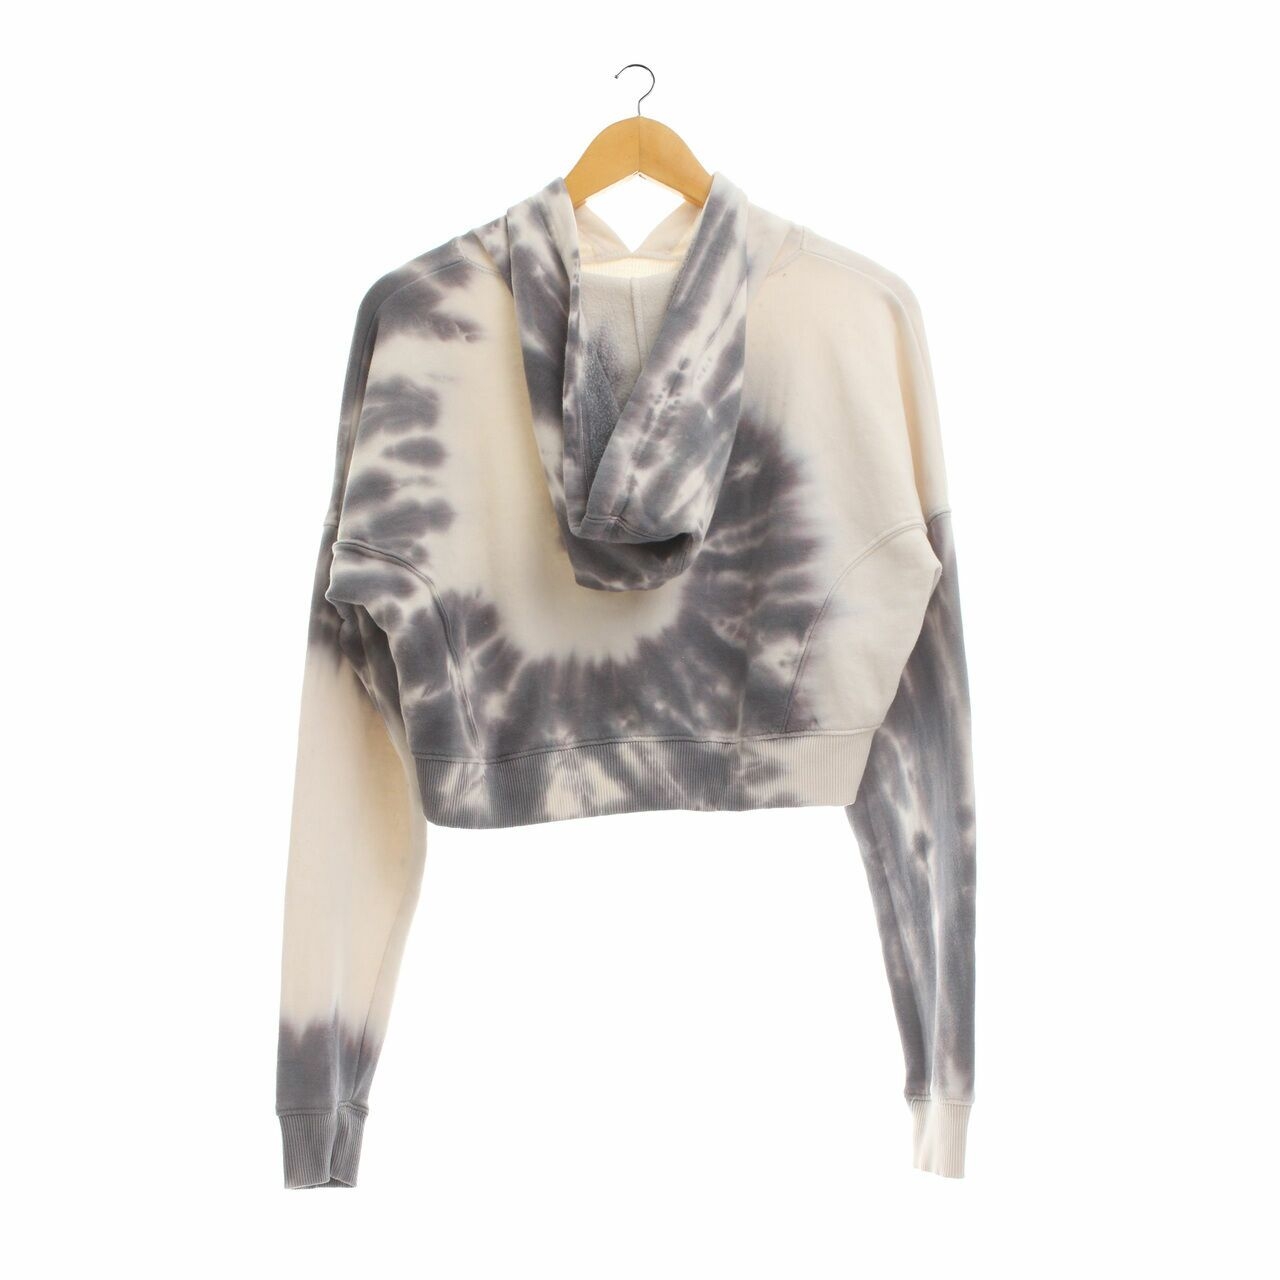 Aeropostale Grey & White Tie Dye Hoodie Sweater Crop